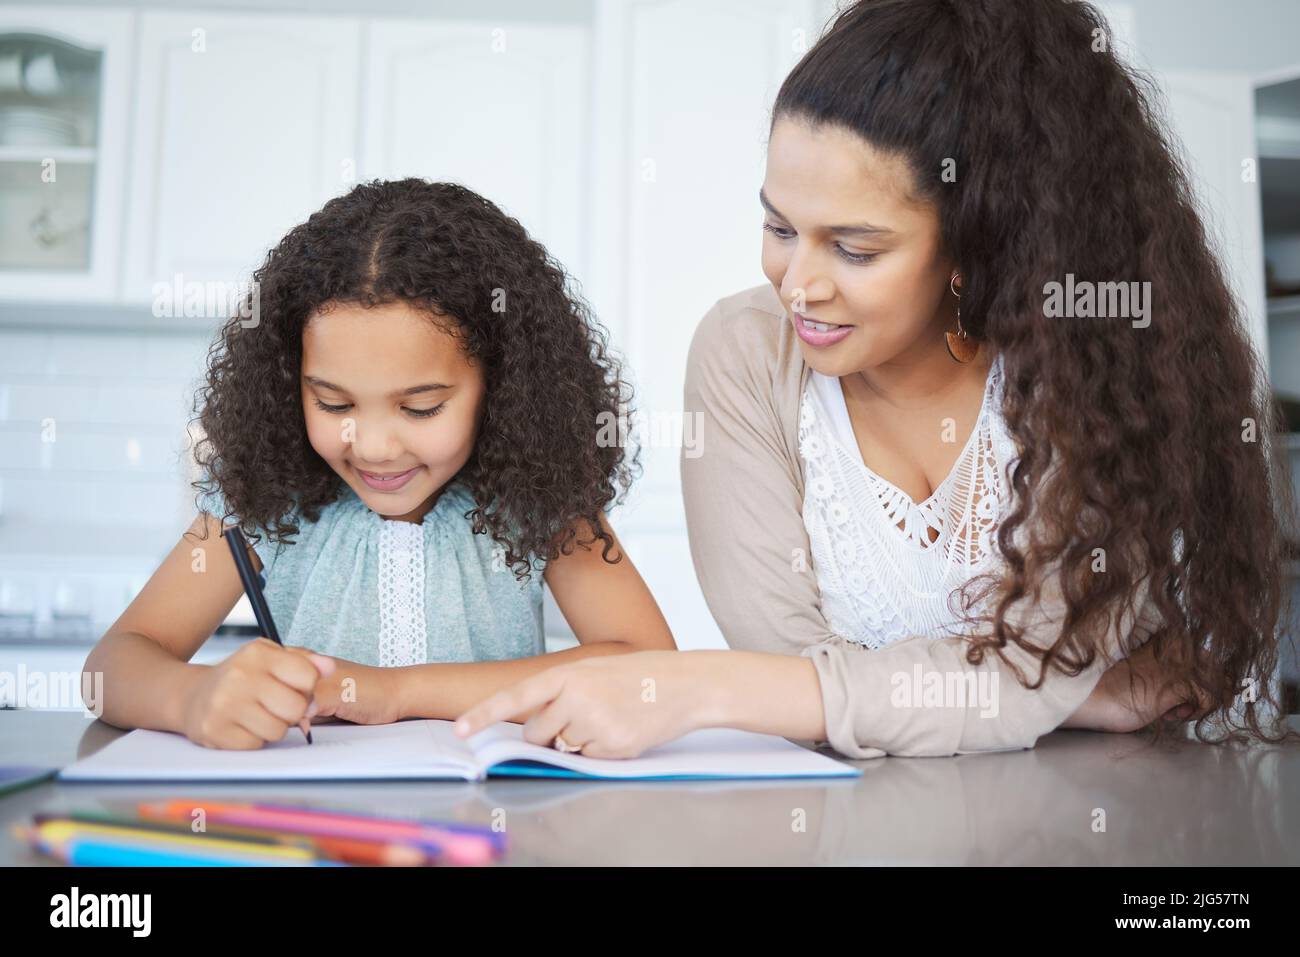 Elle aime le homeschool. Photo d'une mère aidant sa fille à faire ses devoirs à la table de cuisine. Banque D'Images